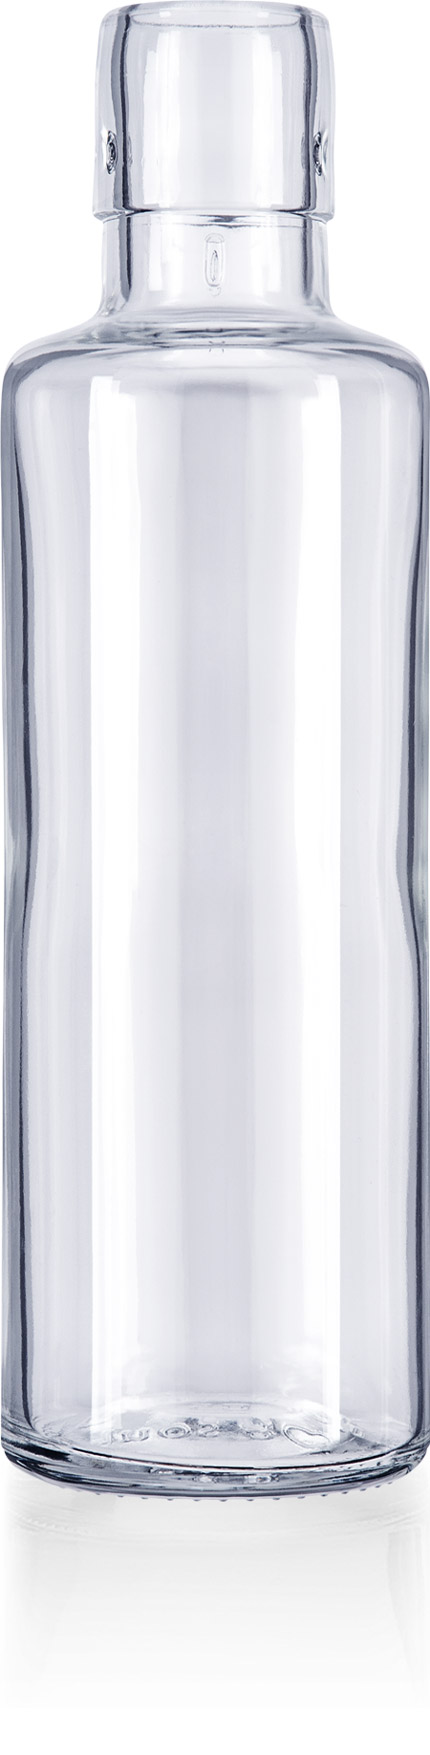 ersatzflasche glas 0,6 l oder 1,0 l